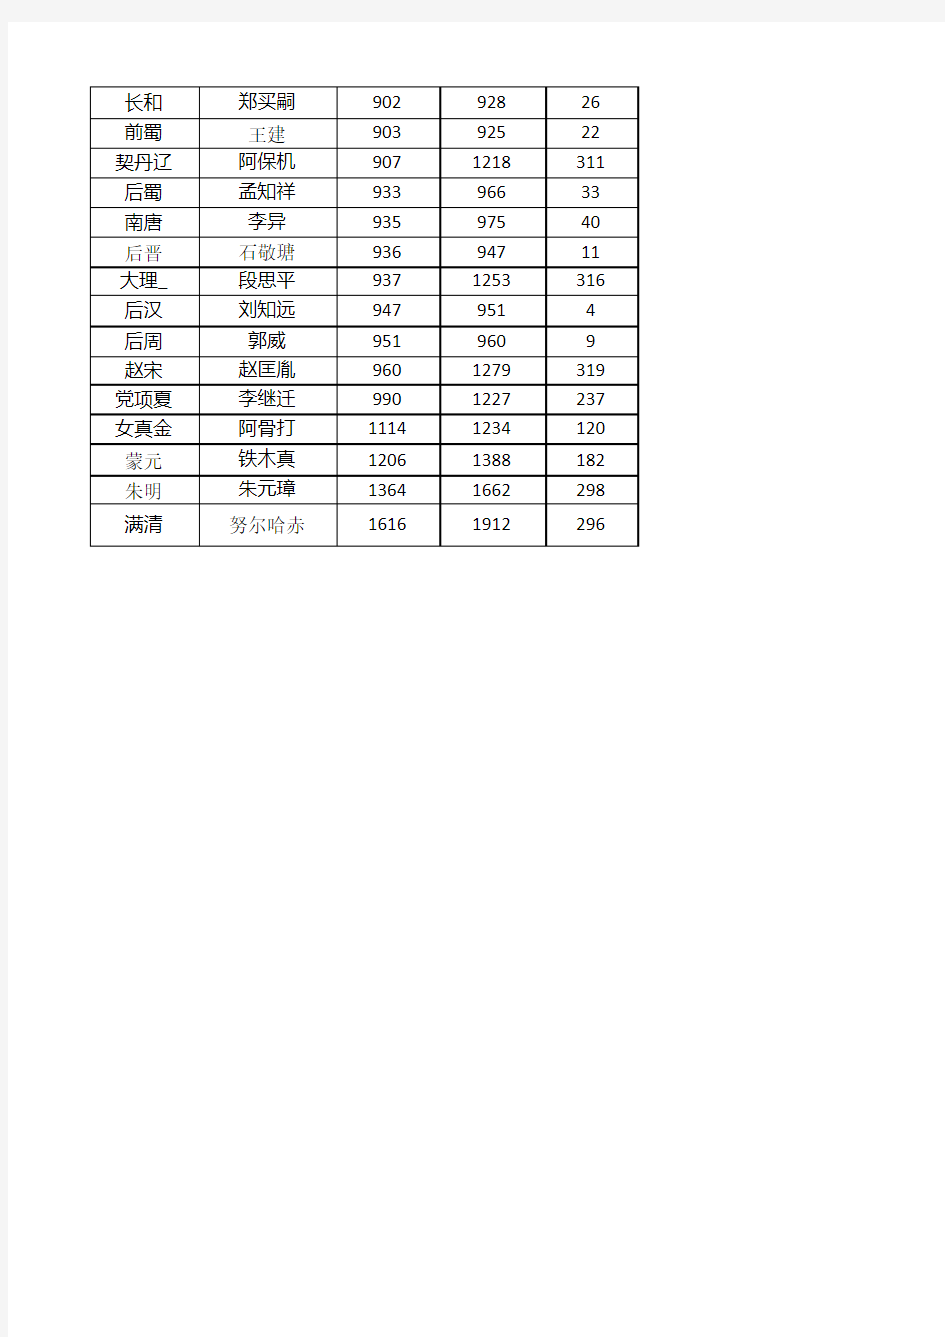 中国朝代顺序完整表(表格 含开国者 存在年份及时间)